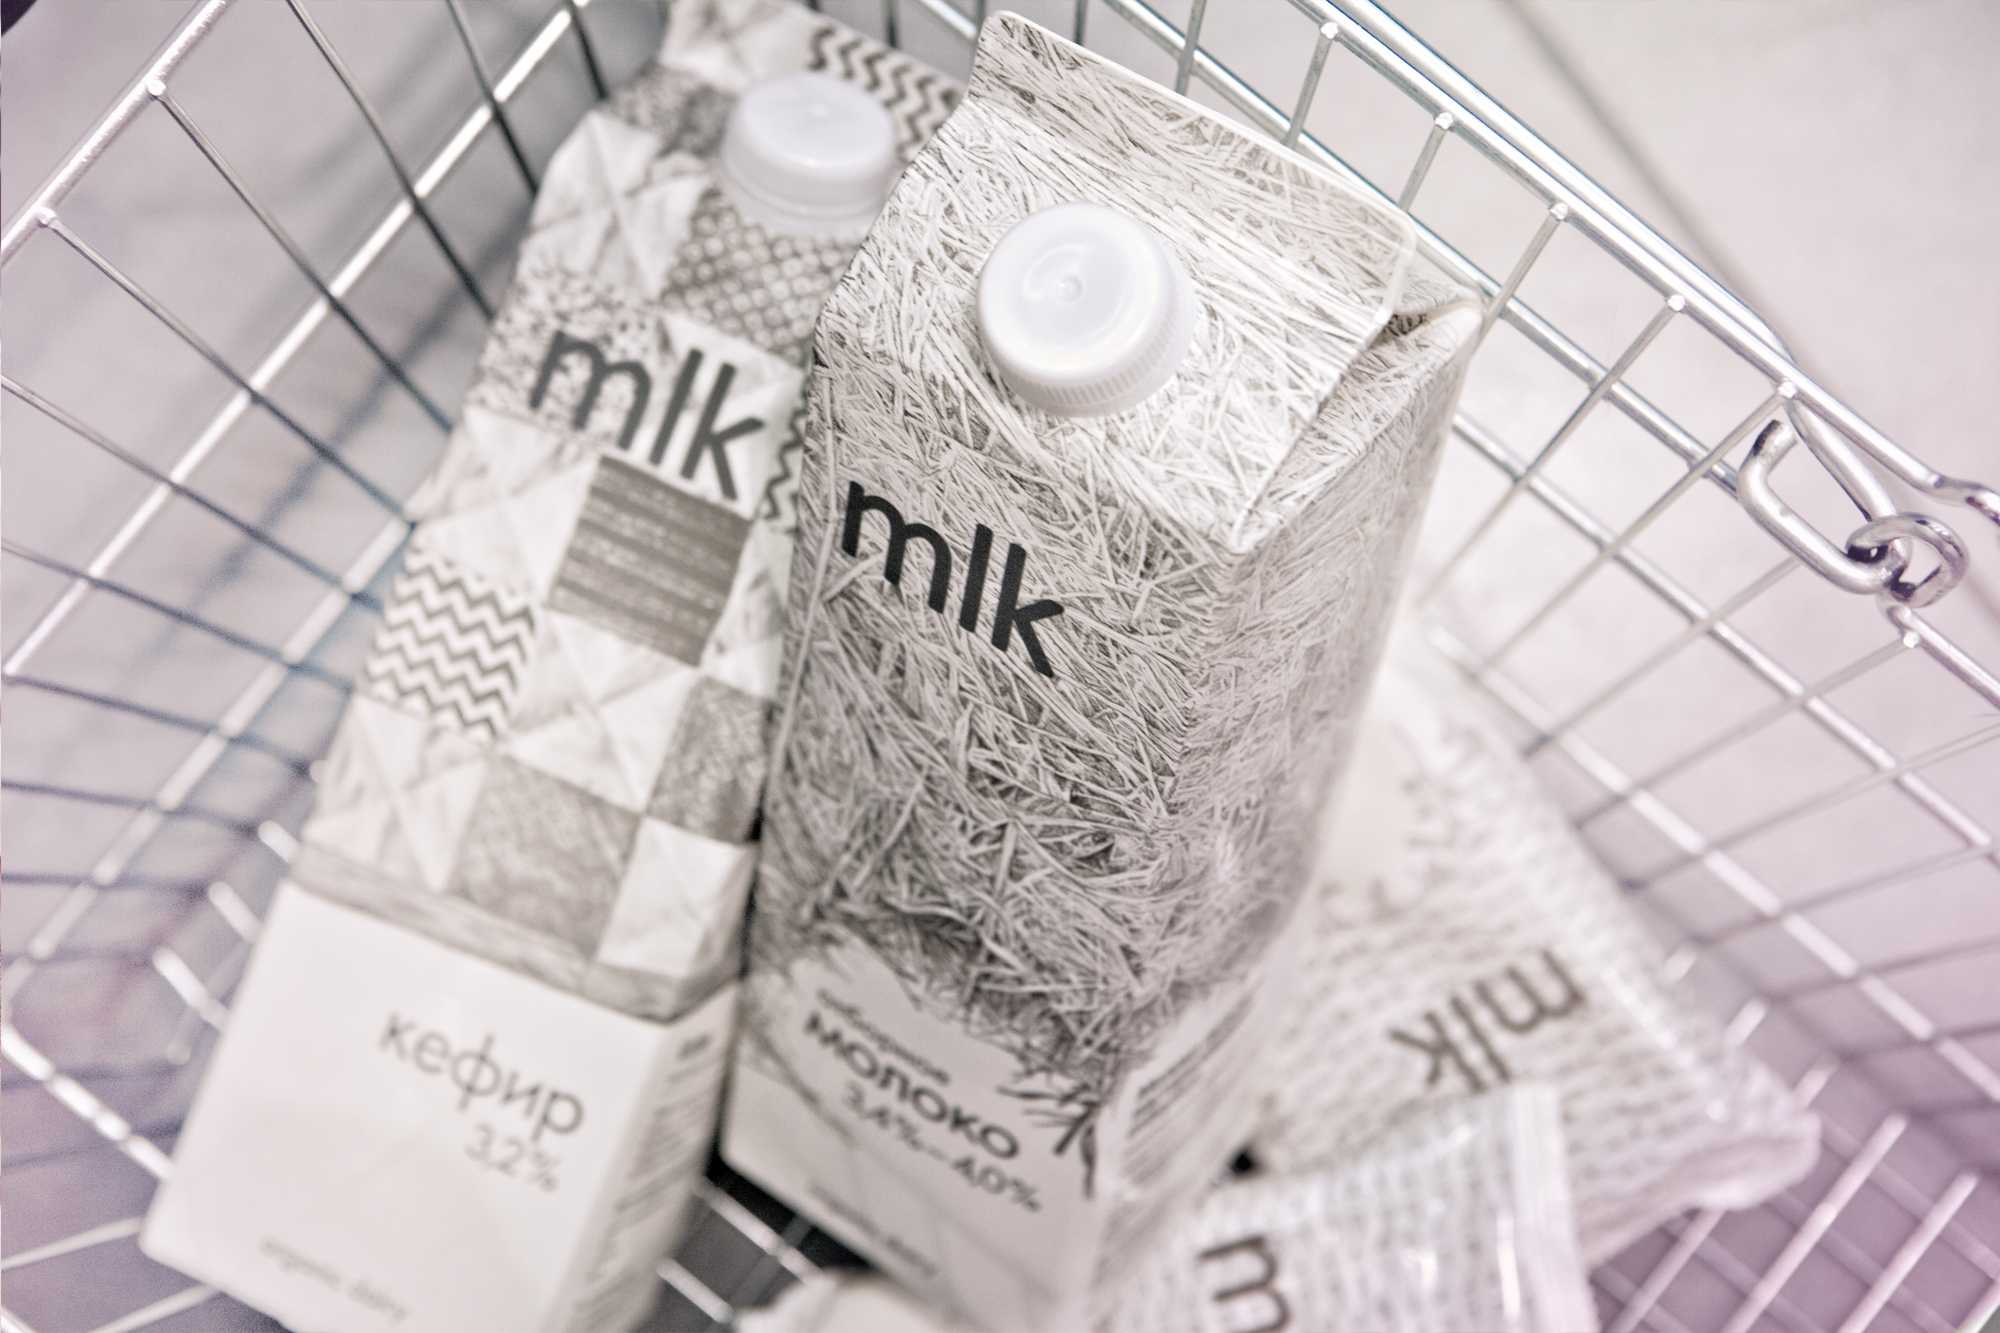 mlk organic dairy, молочная продукция МИЛК, дизайн упаковки, создание бренда, брендинговое агентство Depot WPF